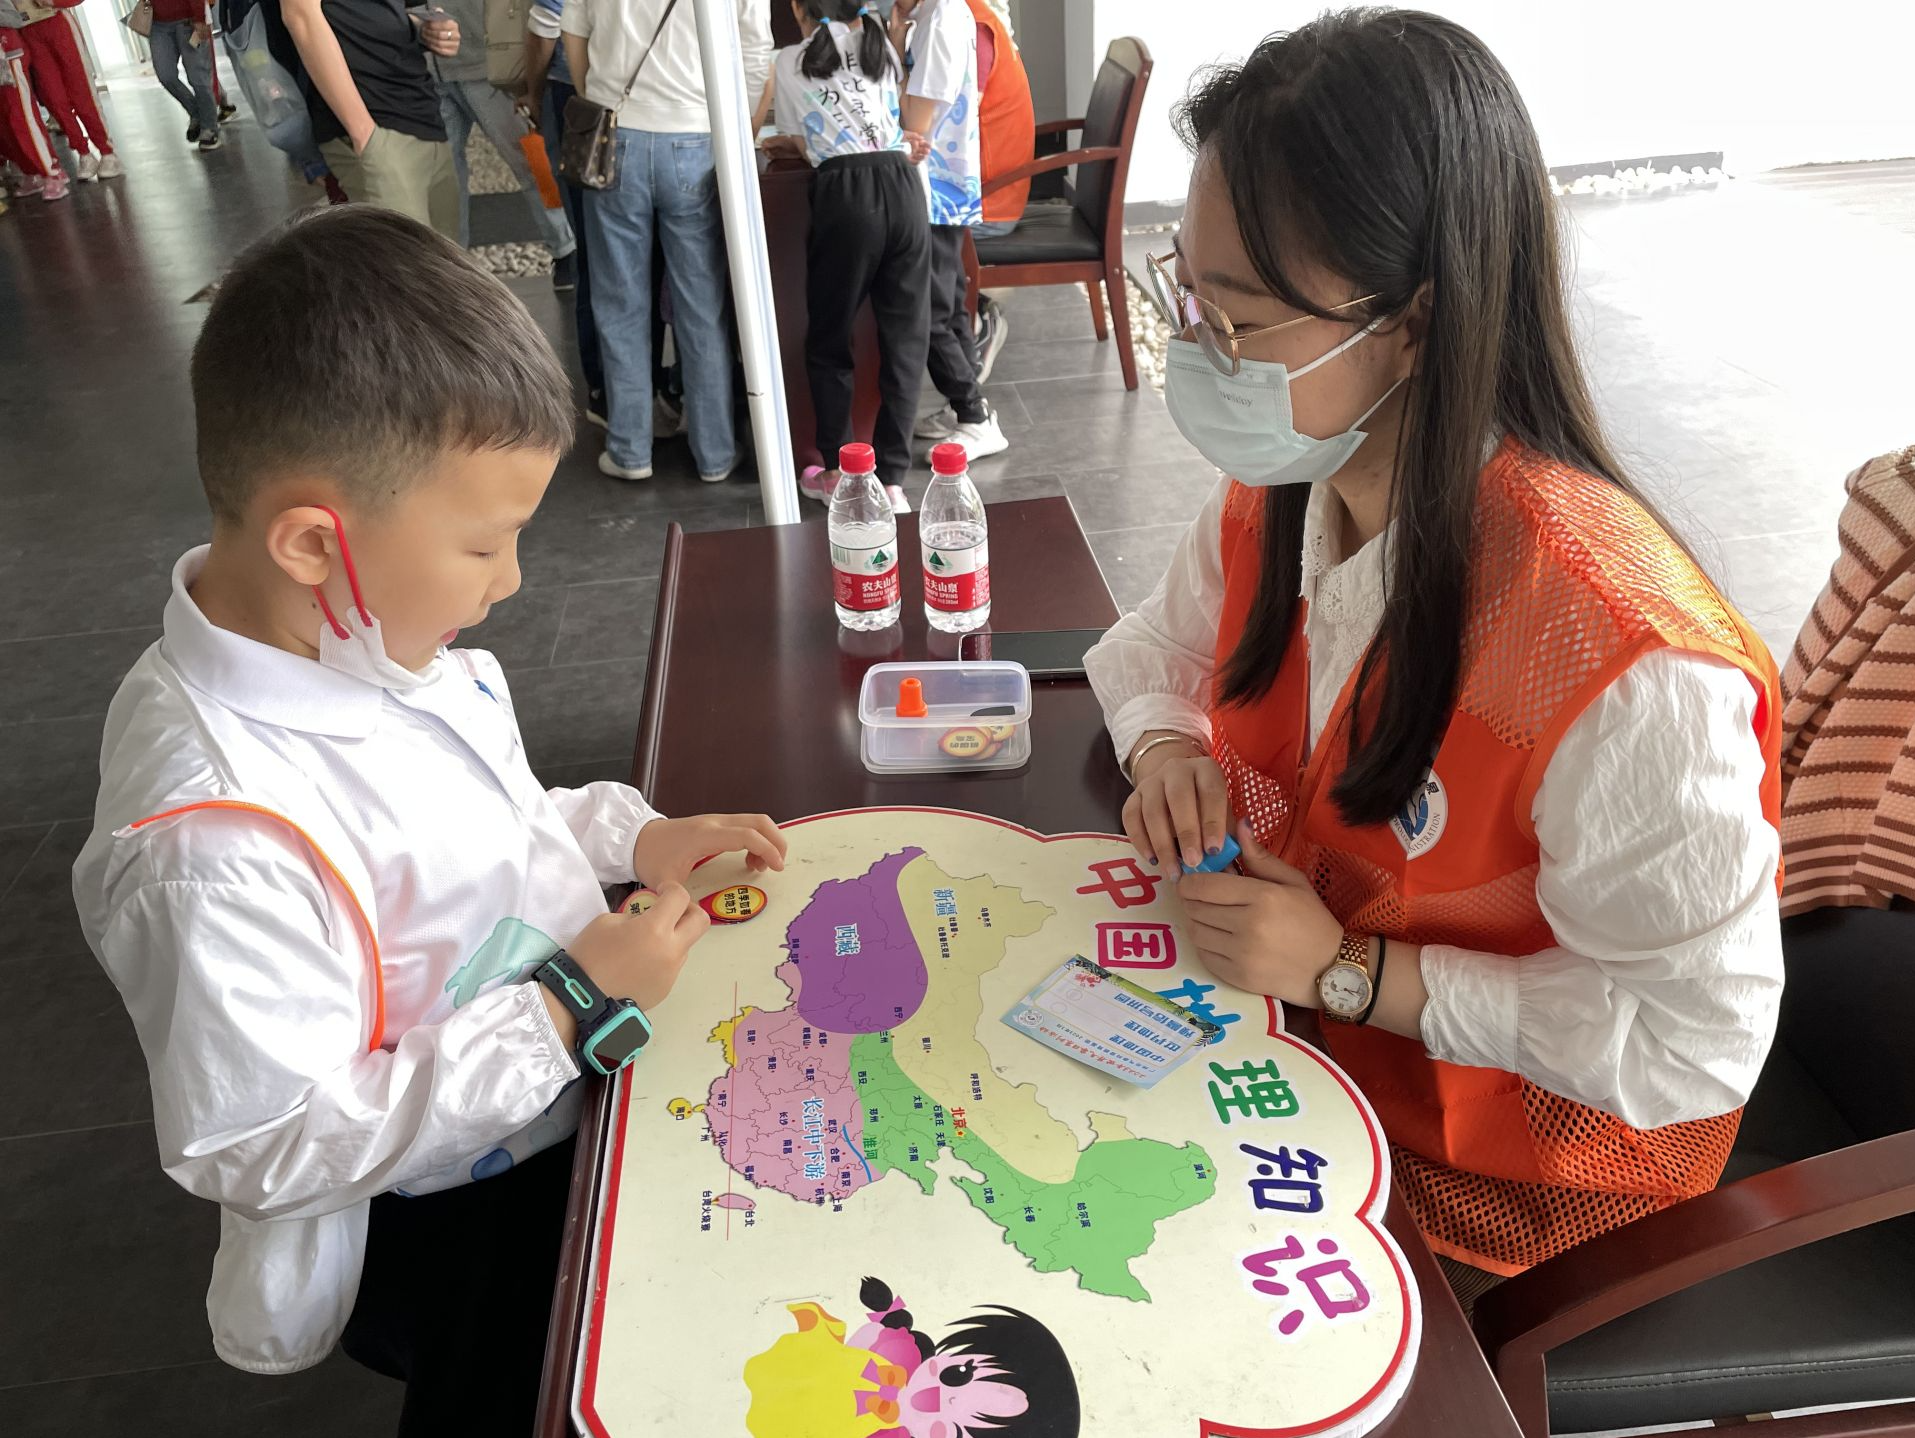 广州市气象局举办世界气象日开放活动